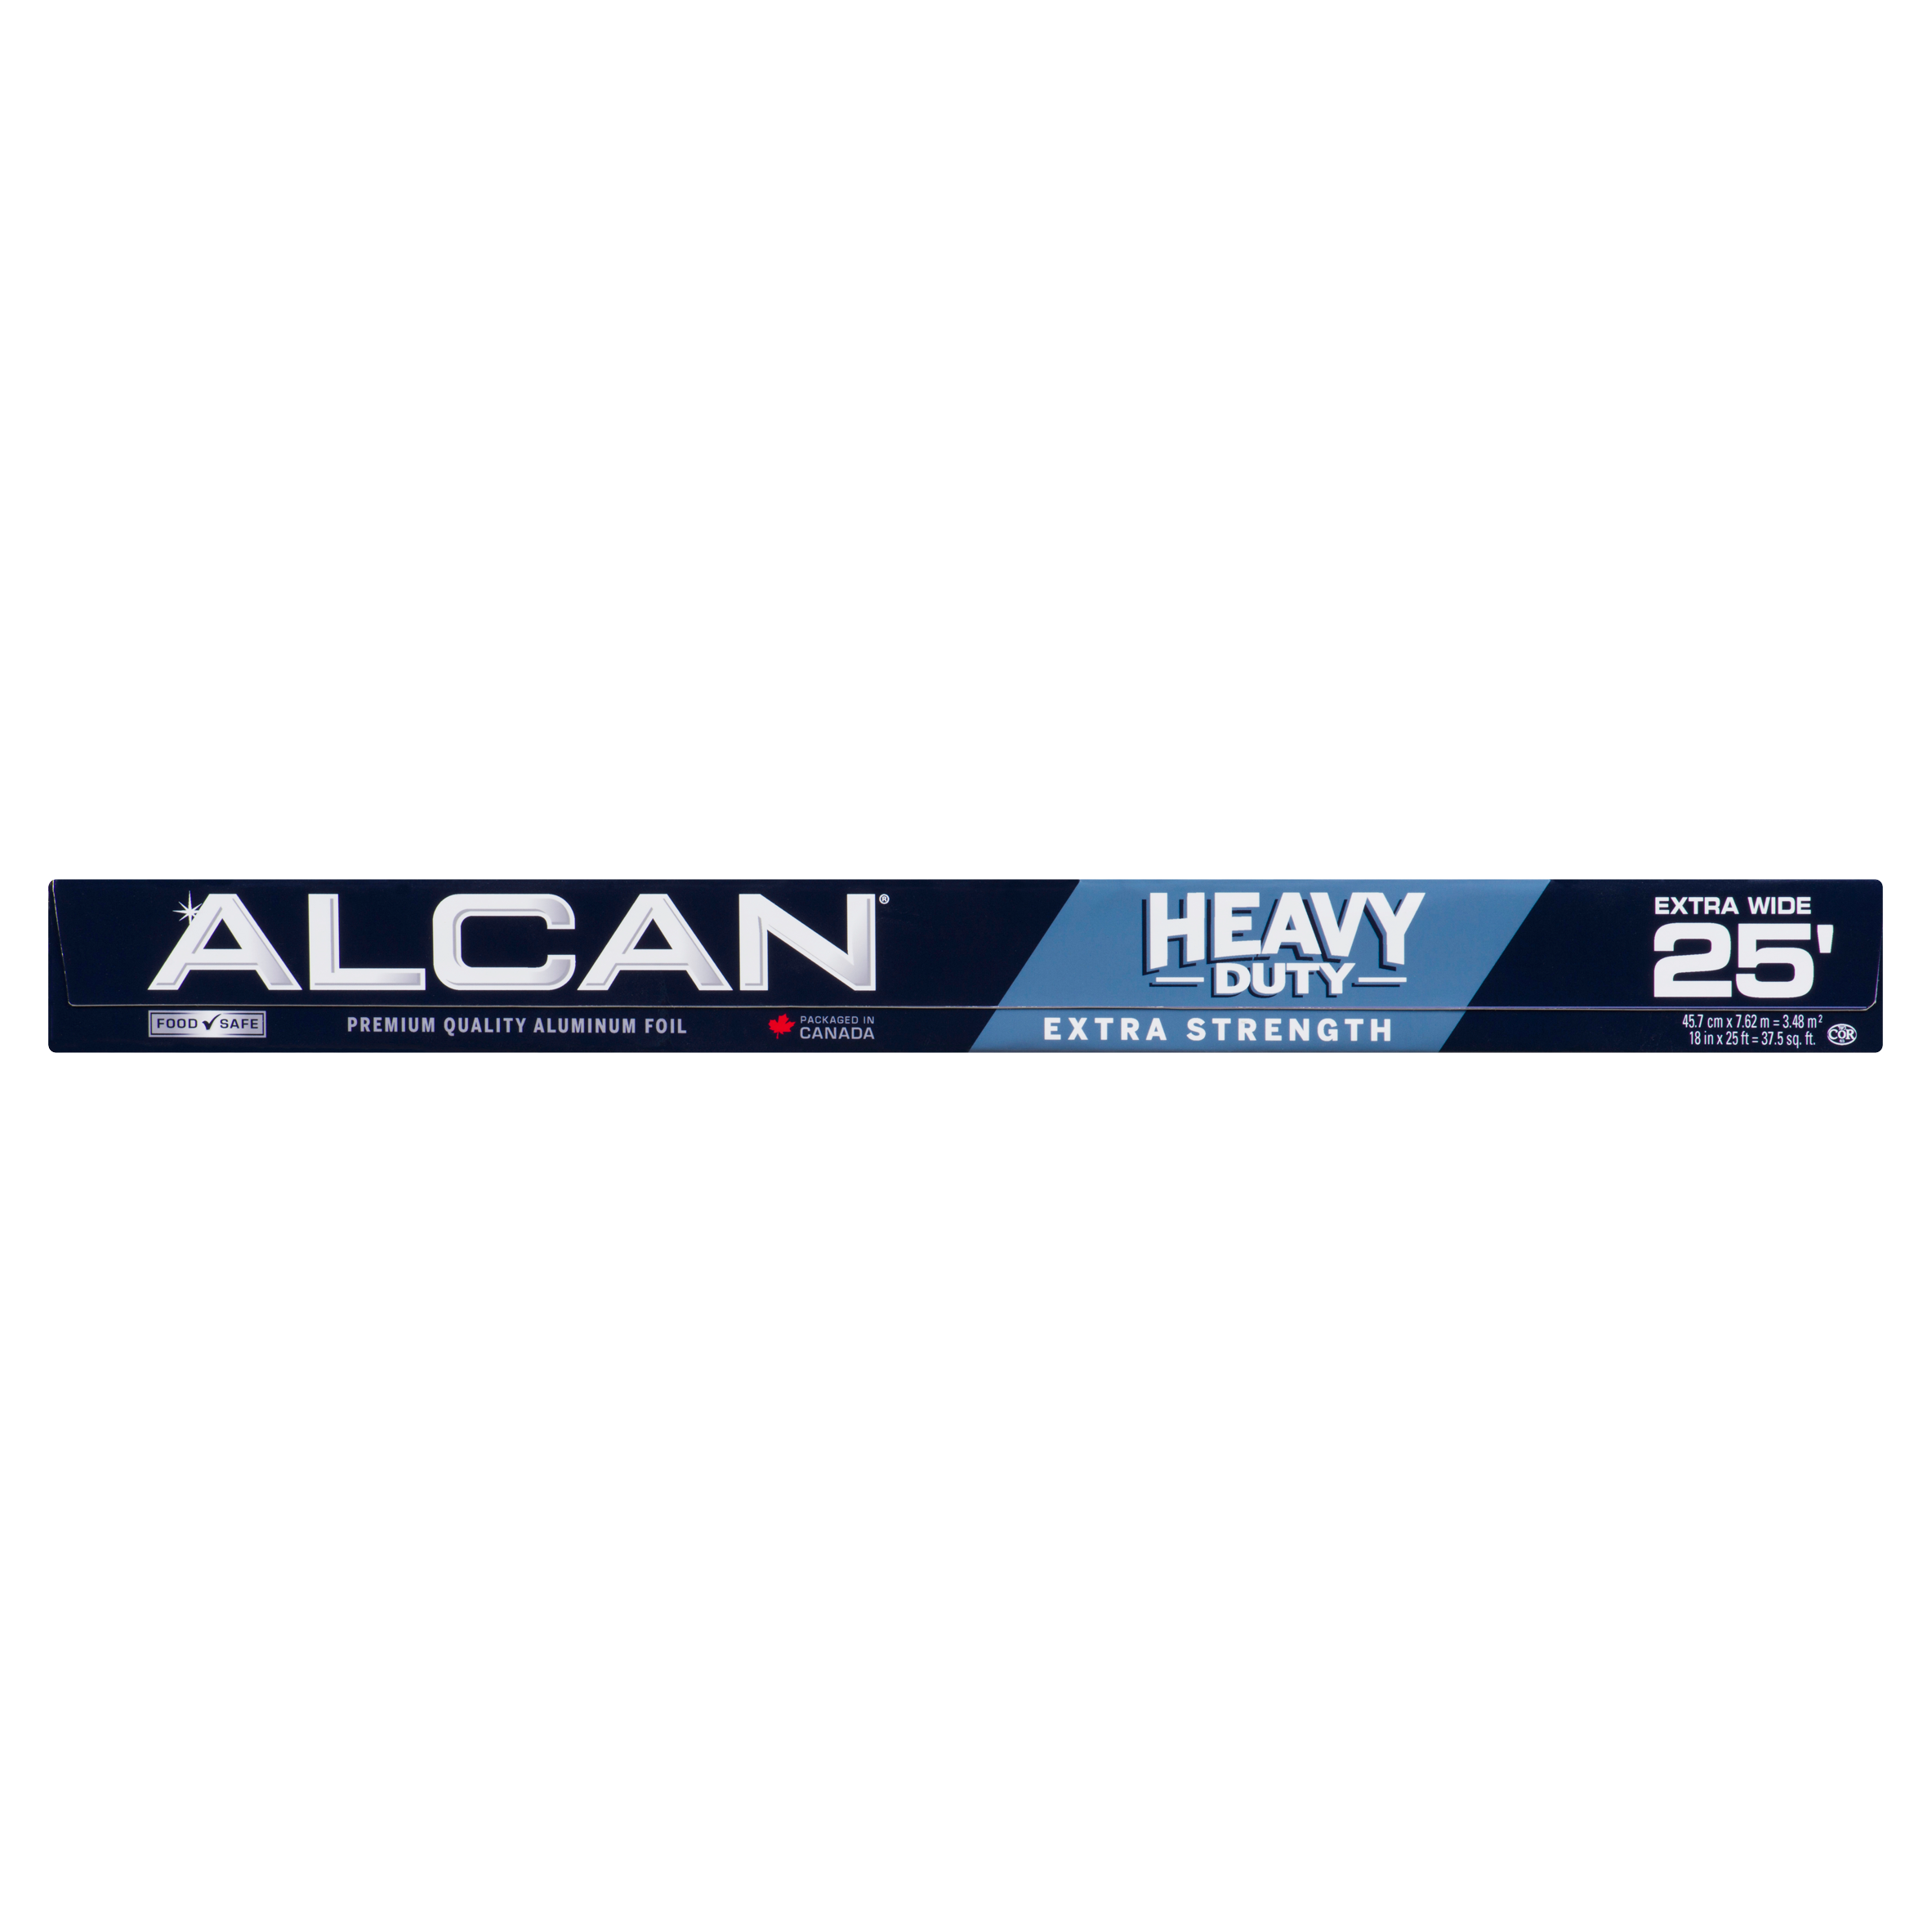 Alcan Premium Quality Aluminum Foil Heavy Duty 45.7 cm x 7.62 m